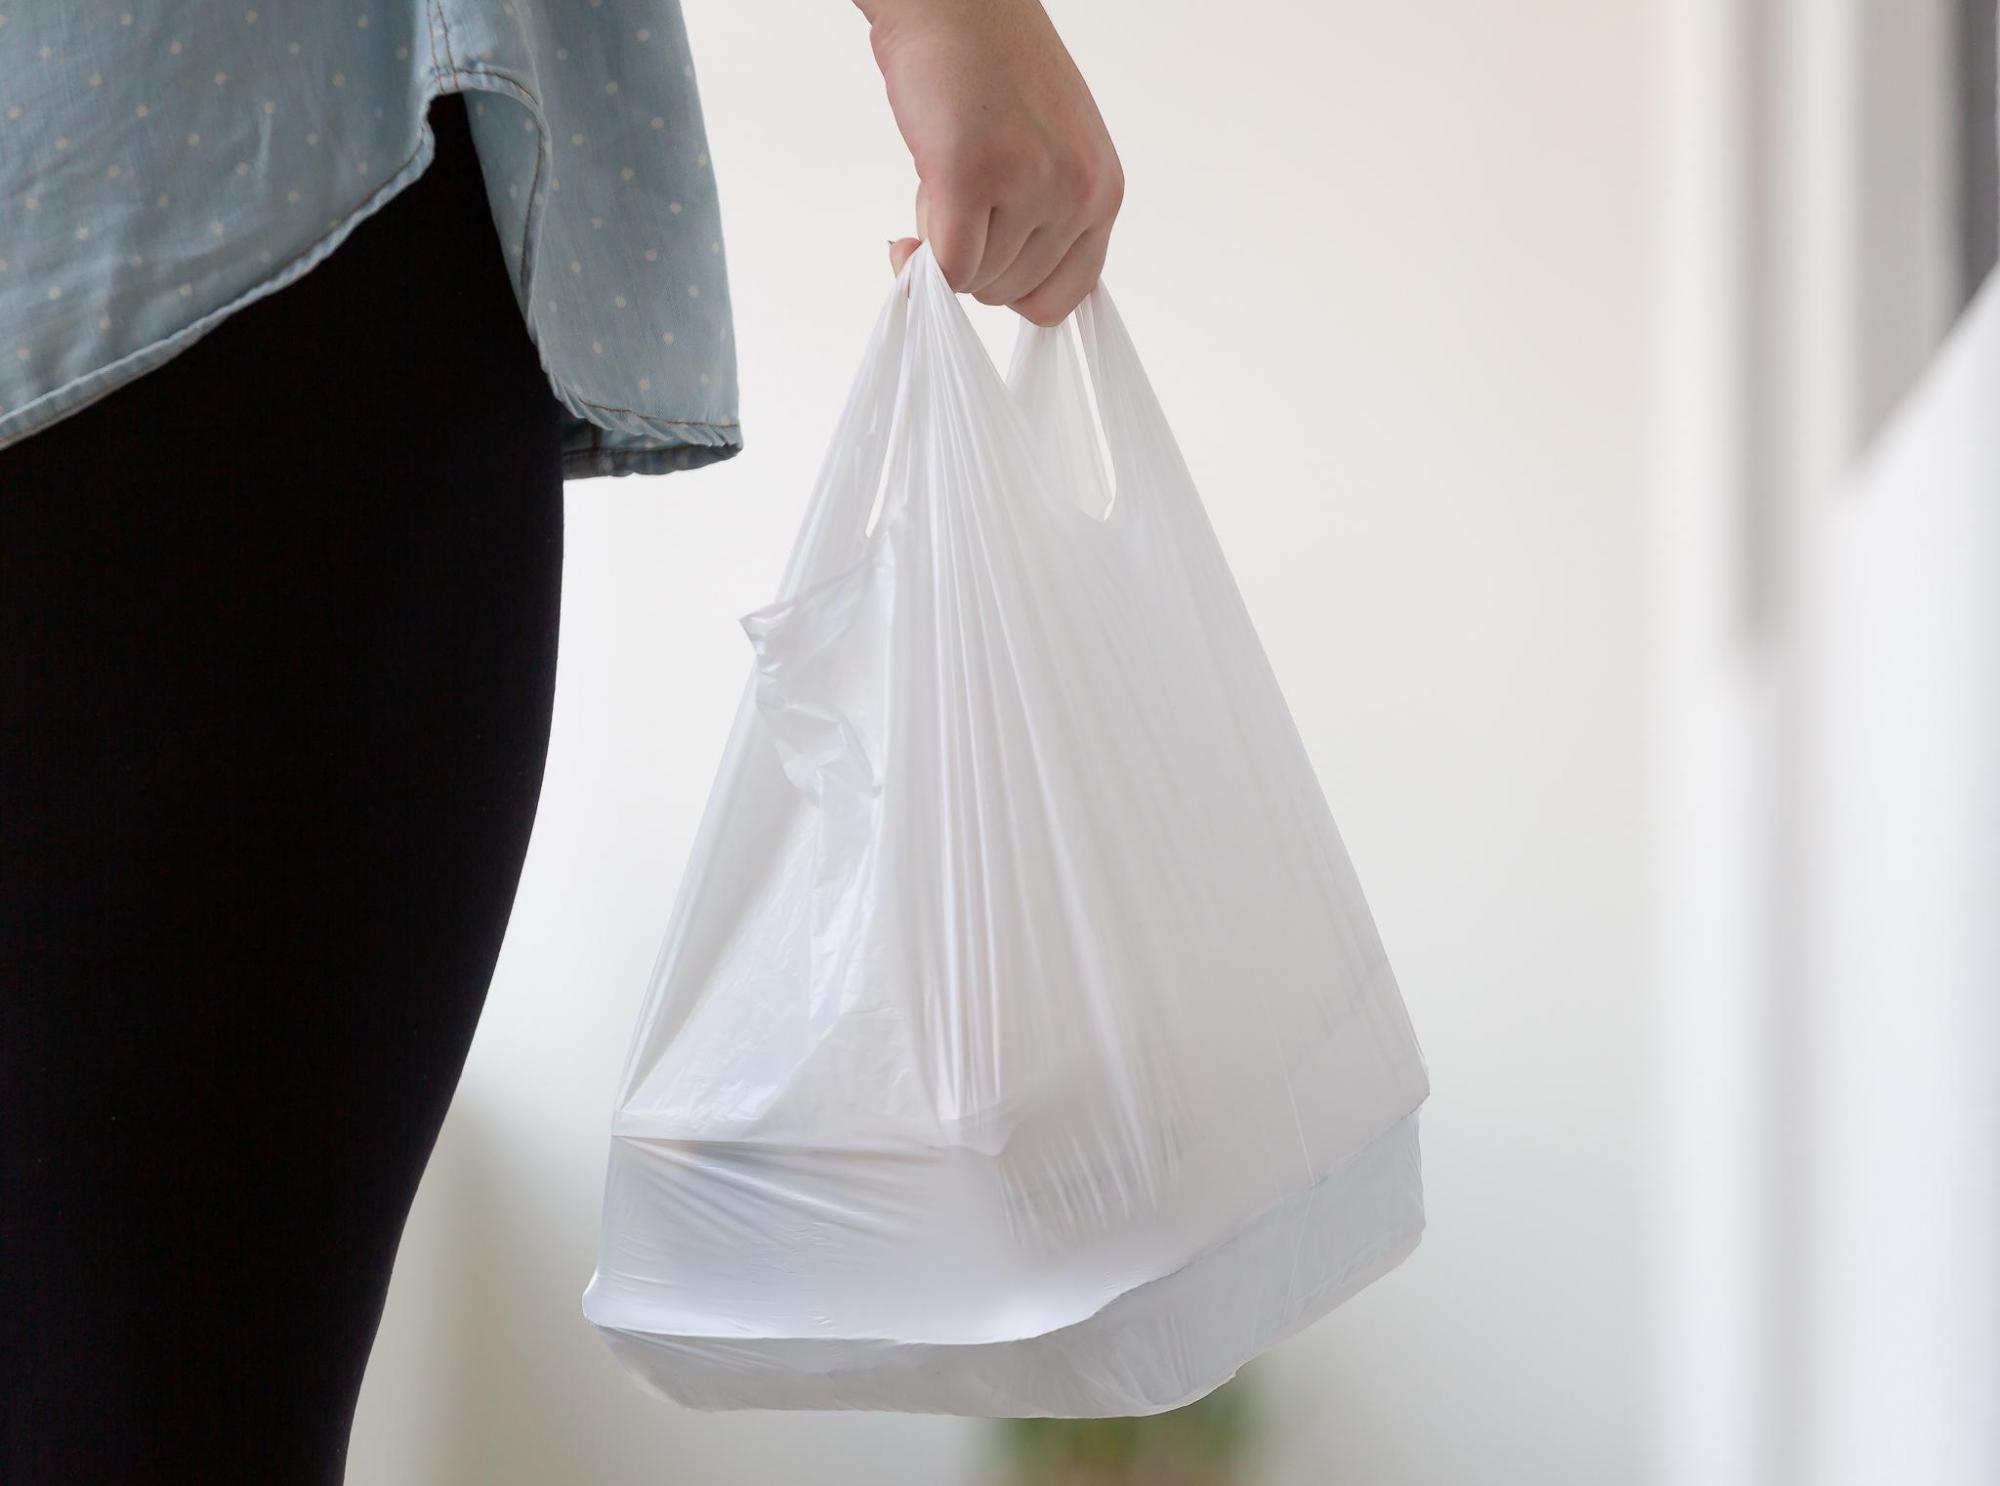 Proposto incentivo fiscal aos estabelecimentos que não fornecerem sacolas plásticas